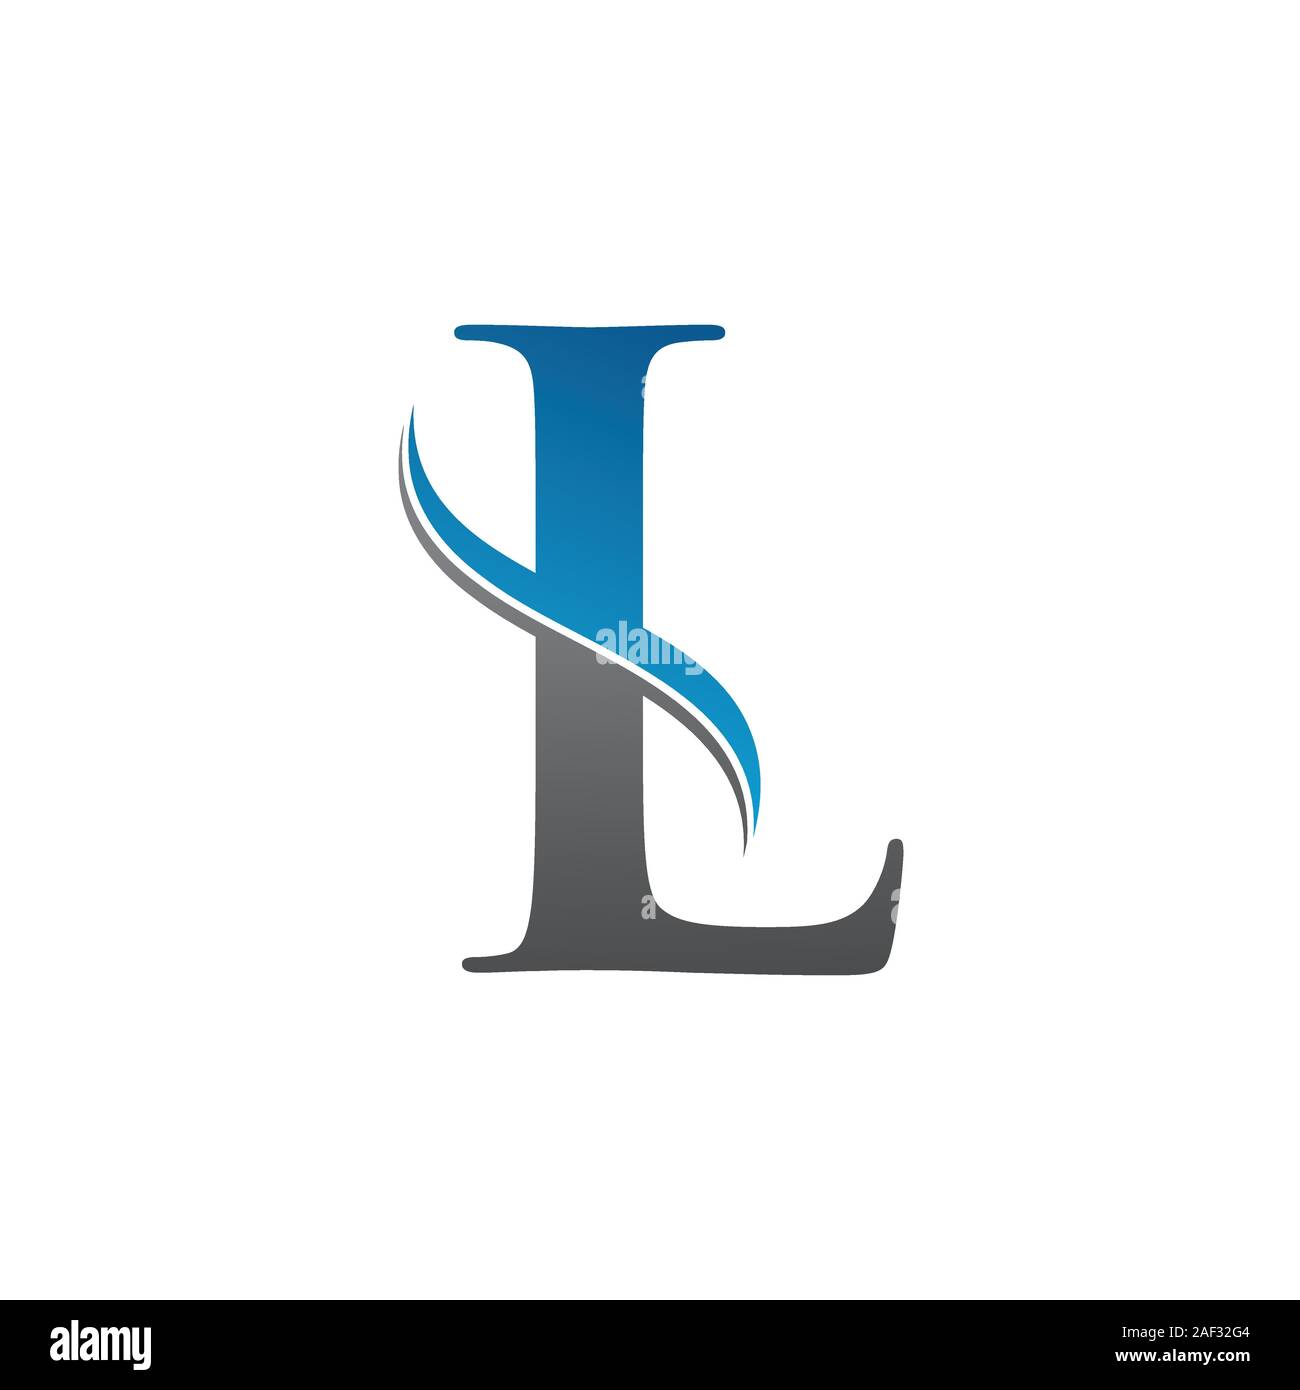 Garganta Estación satisfacción Initial Letter L Logo With Creative Modern Business Typography Vector  Template. Creative Abstract Letter L Logo Vector. L Logo Design Stock  Vector Image & Art - Alamy